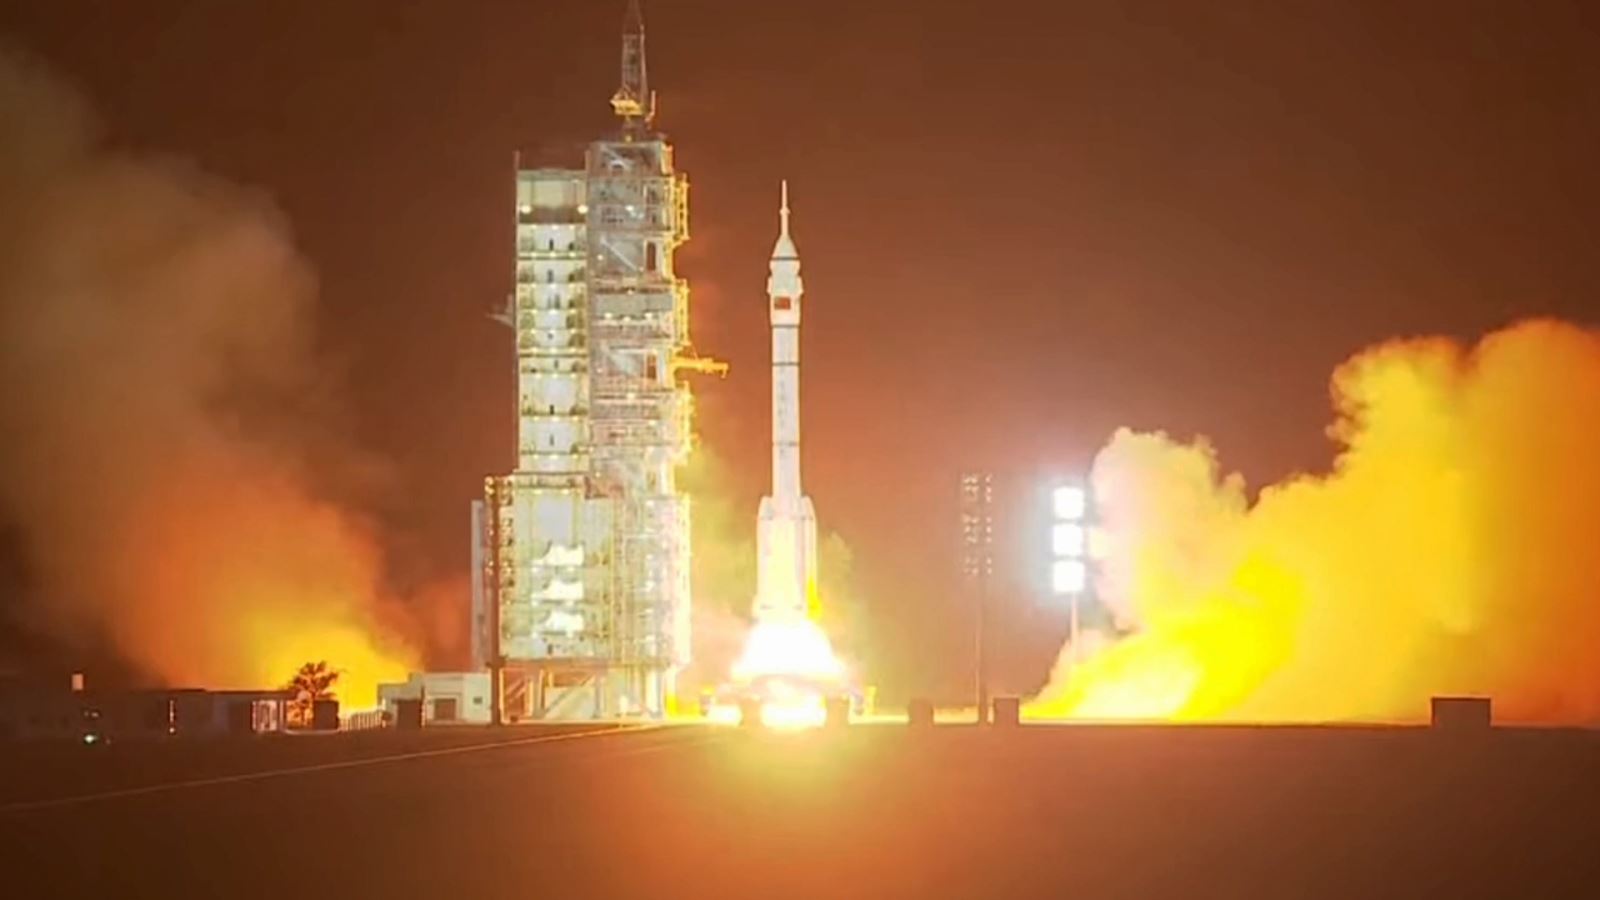  Trung Quốc phóng tàu vũ trụ Thần Châu-18 lên Trạm vũ trụ Thiên Cung 